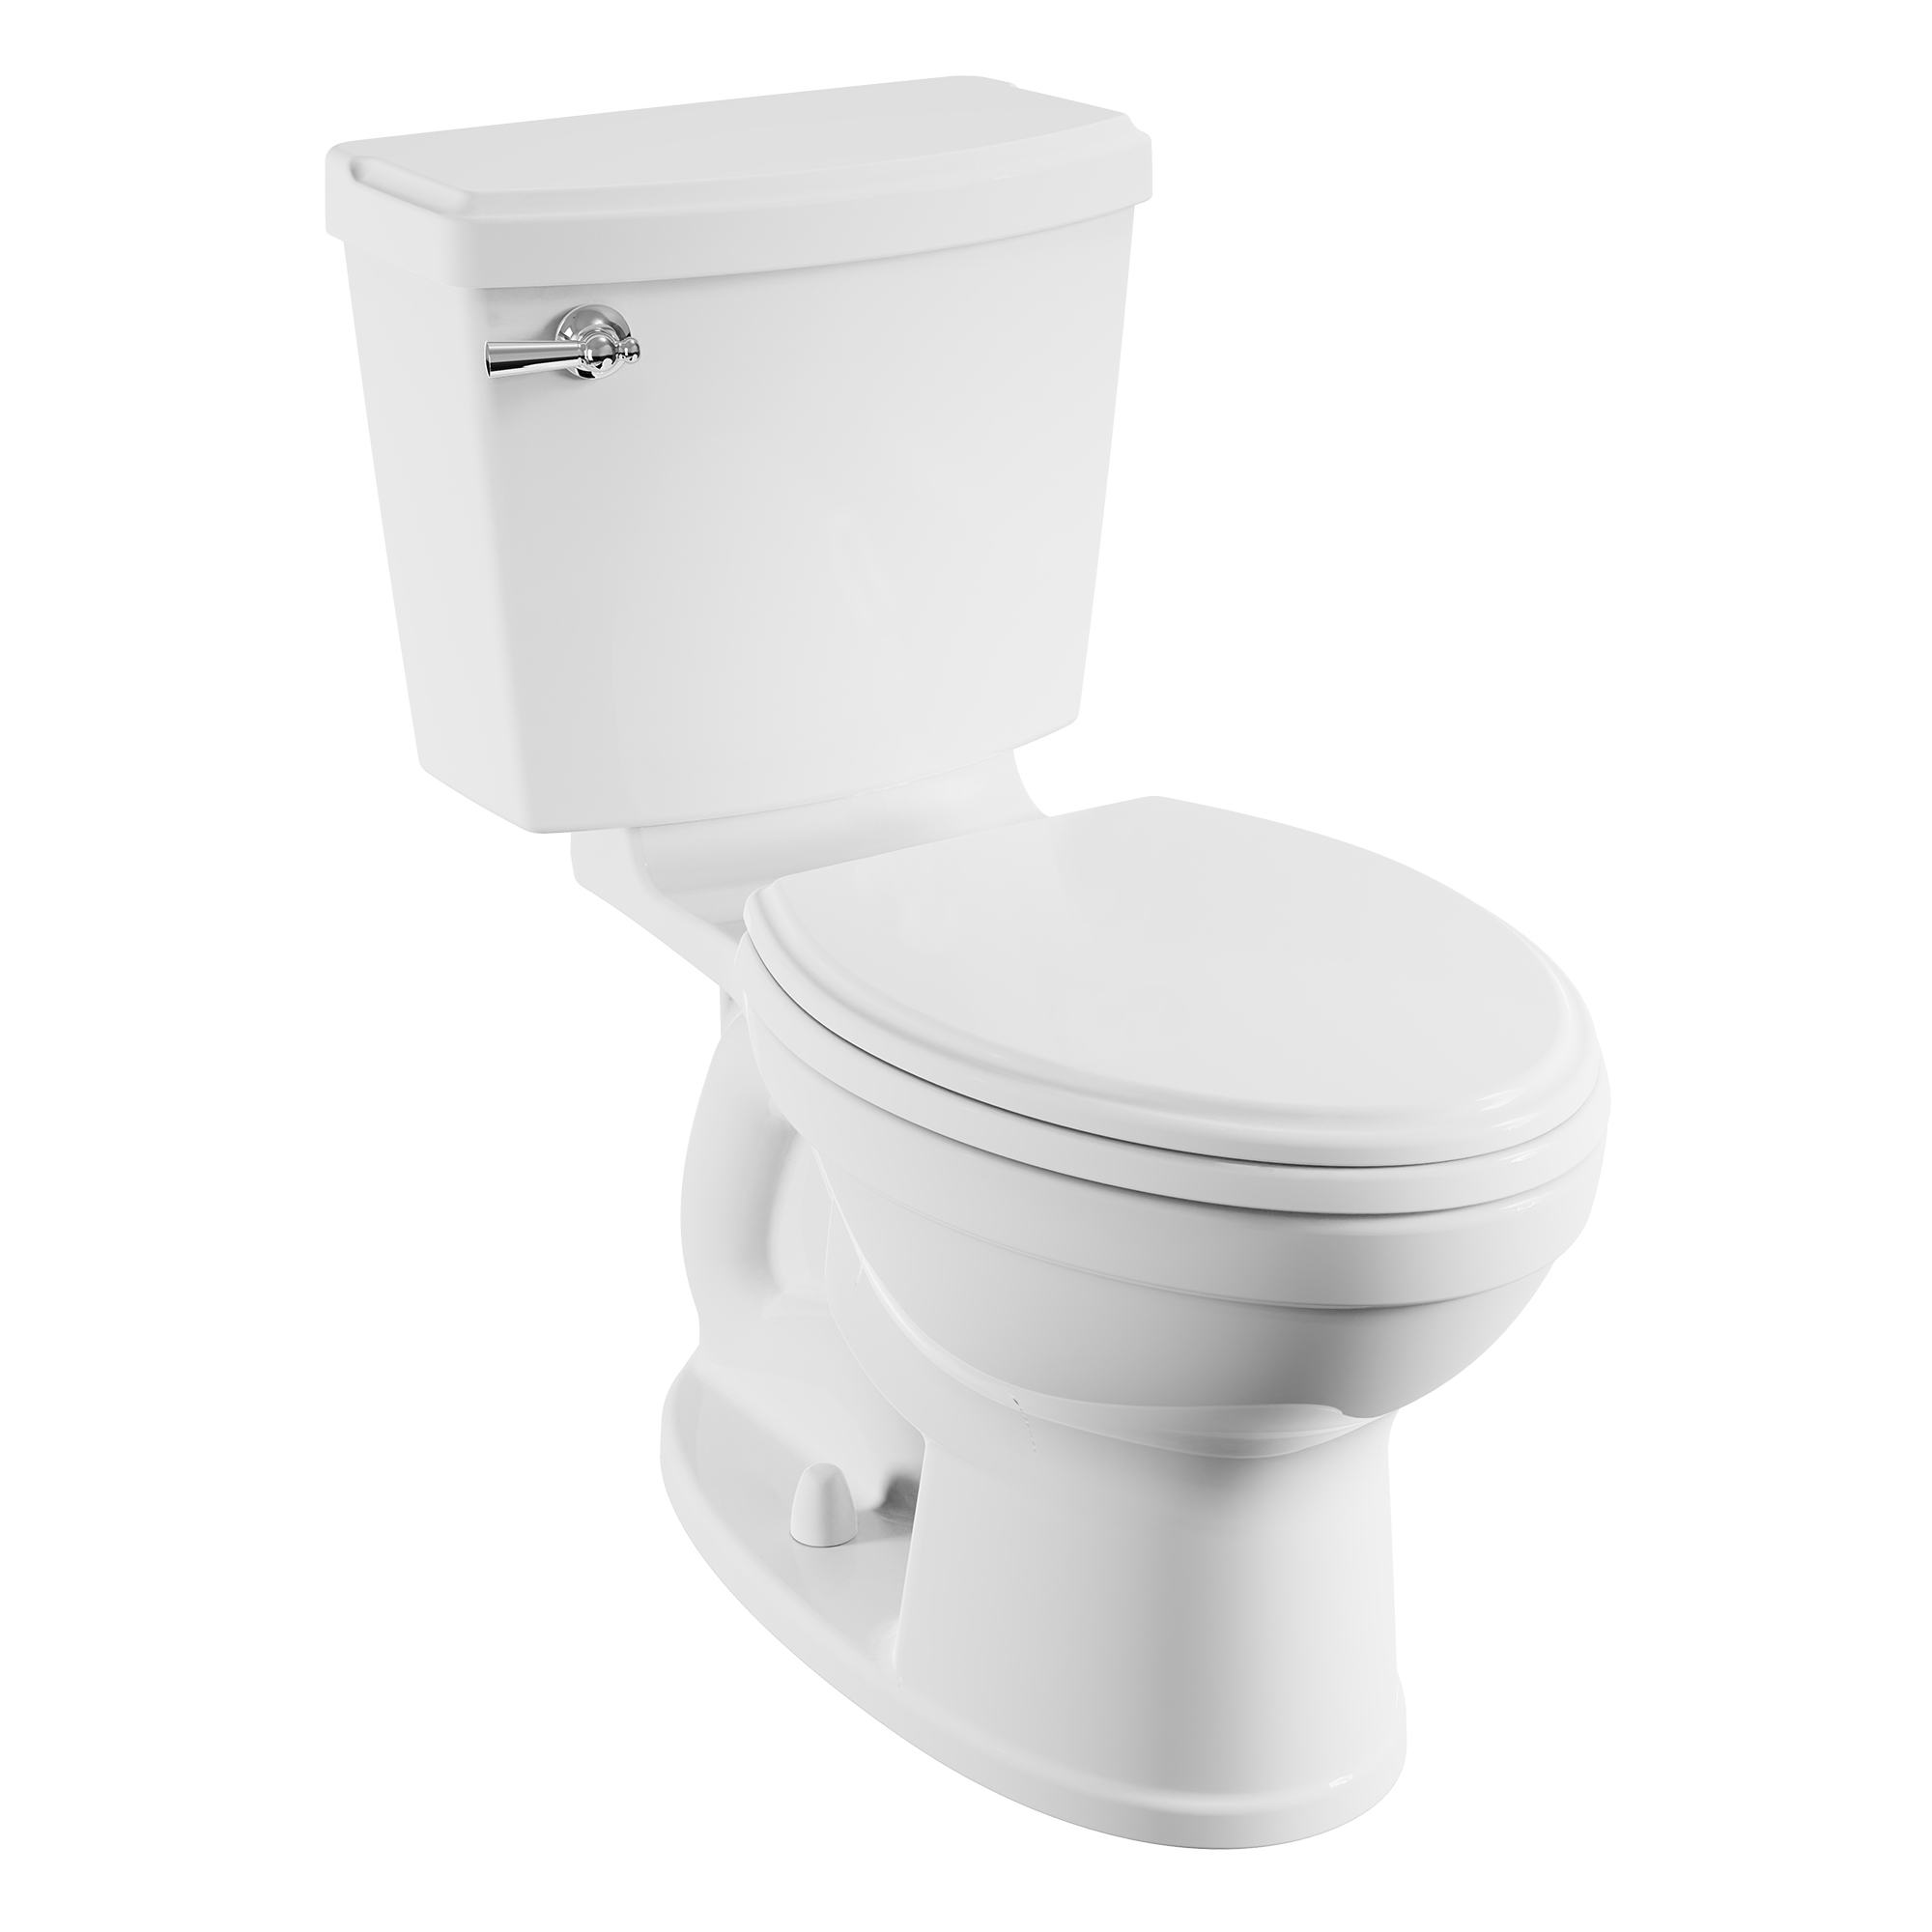 Toilette Retrospect Champion PRO, 2 pièces, 1,28 gpc/4,8 lpc, à cuvette allongée à hauteur régulière, sans siège